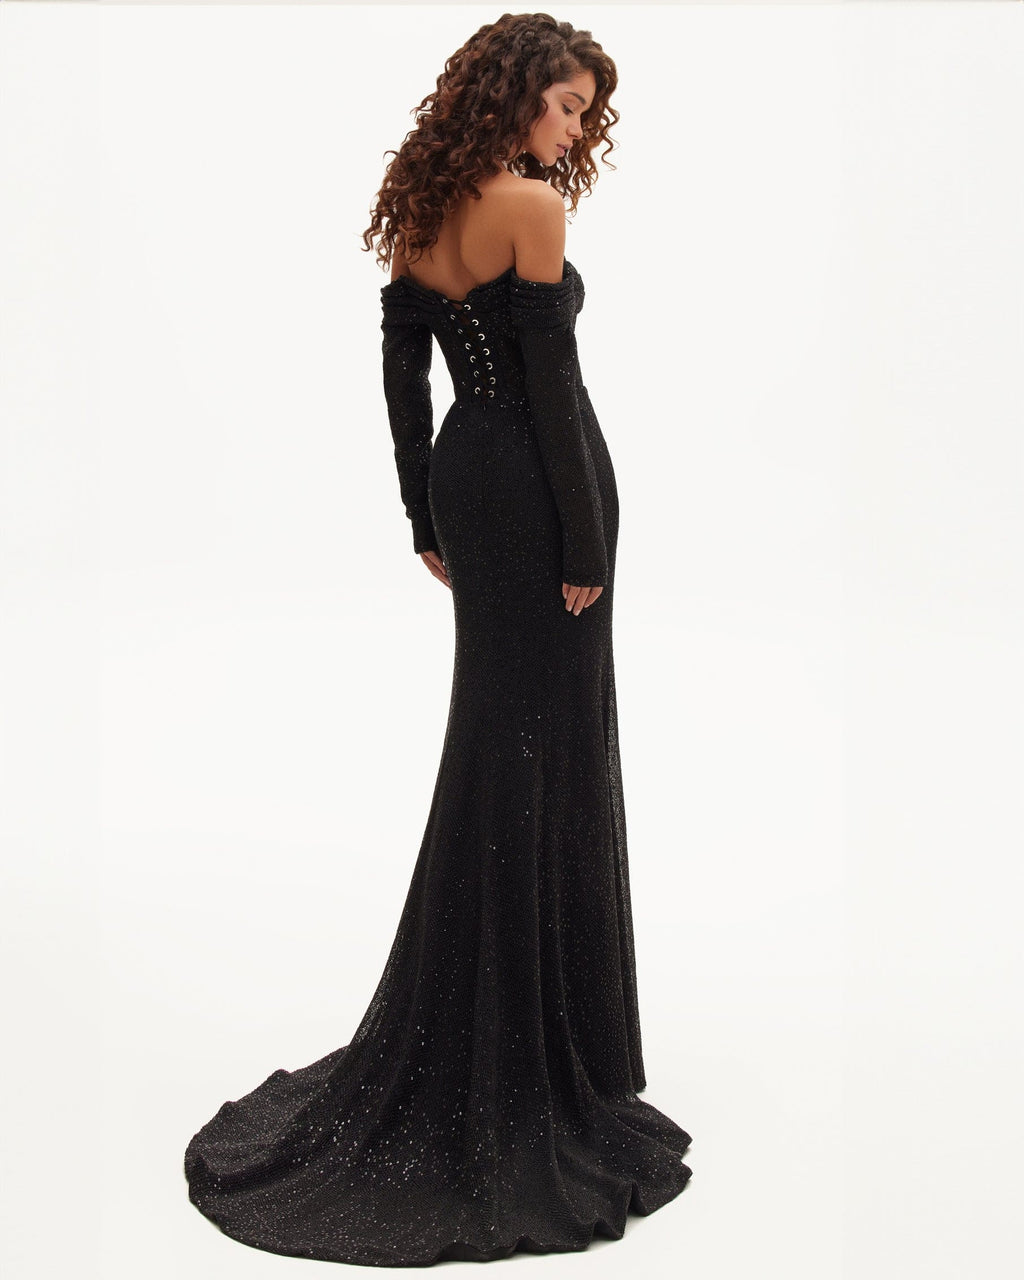 Elegant black off-the-shoulder sparkling maxi dress